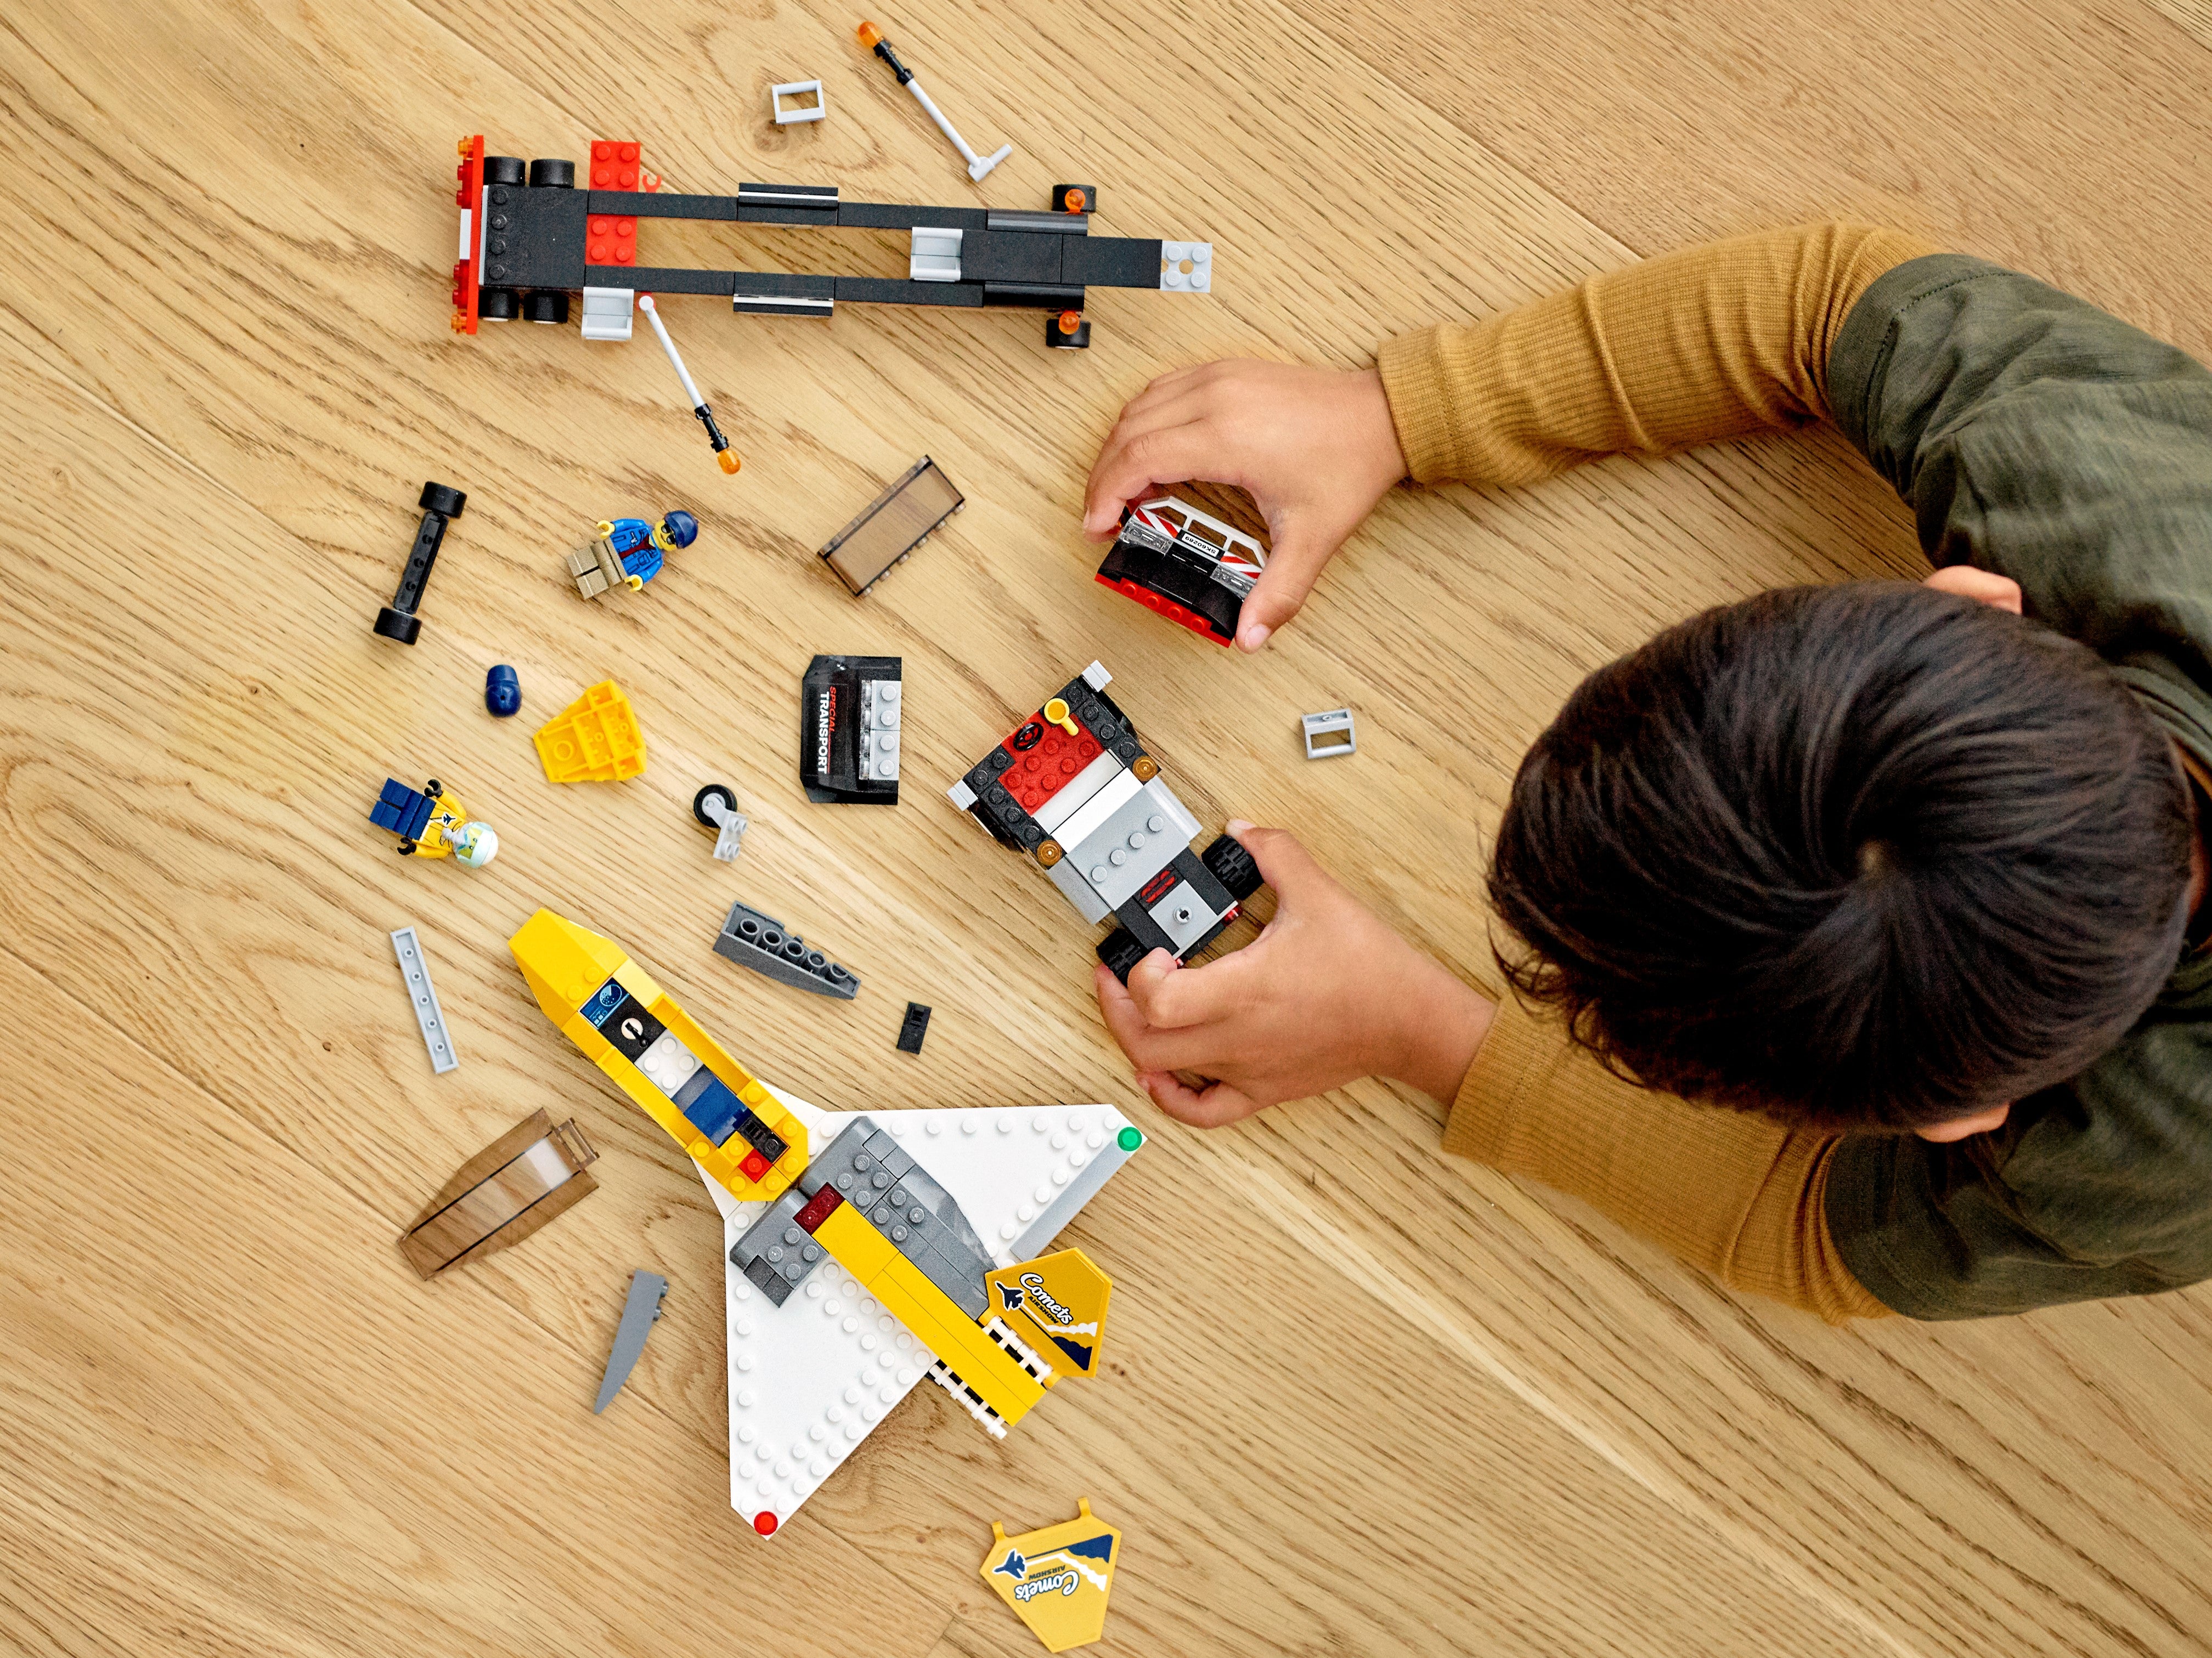 Конструктор LEGO City Great Vehicles «Транспортировка самолёта на авиашоу» 60289 / 281 деталь